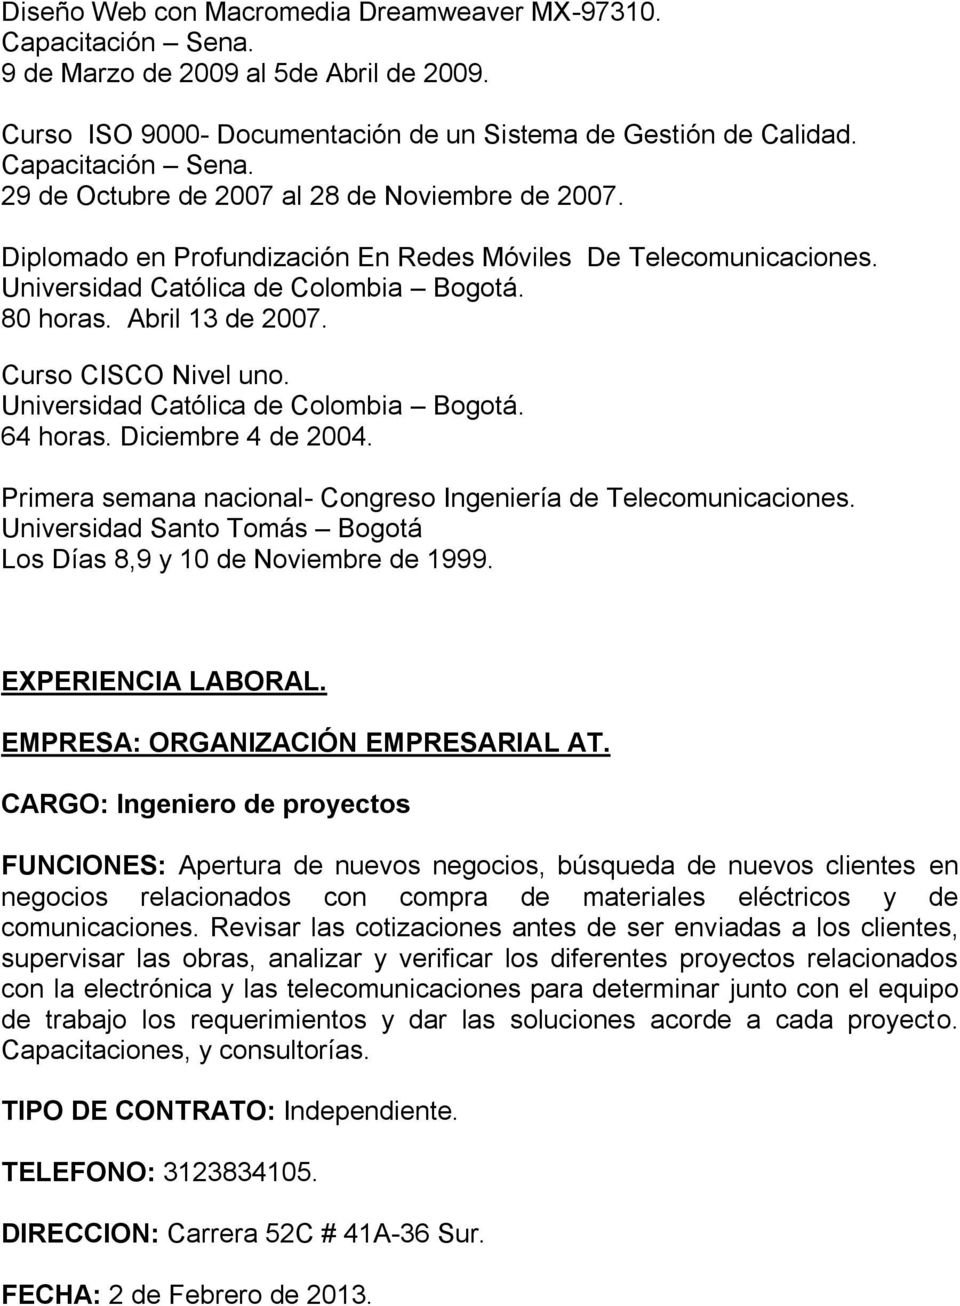 Curso CISCO Nivel uno. Universidad Católica de Colombia Bogotá. 64 horas. Diciembre 4 de 2004. Primera semana nacional- Congreso Ingeniería de Telecomunicaciones.